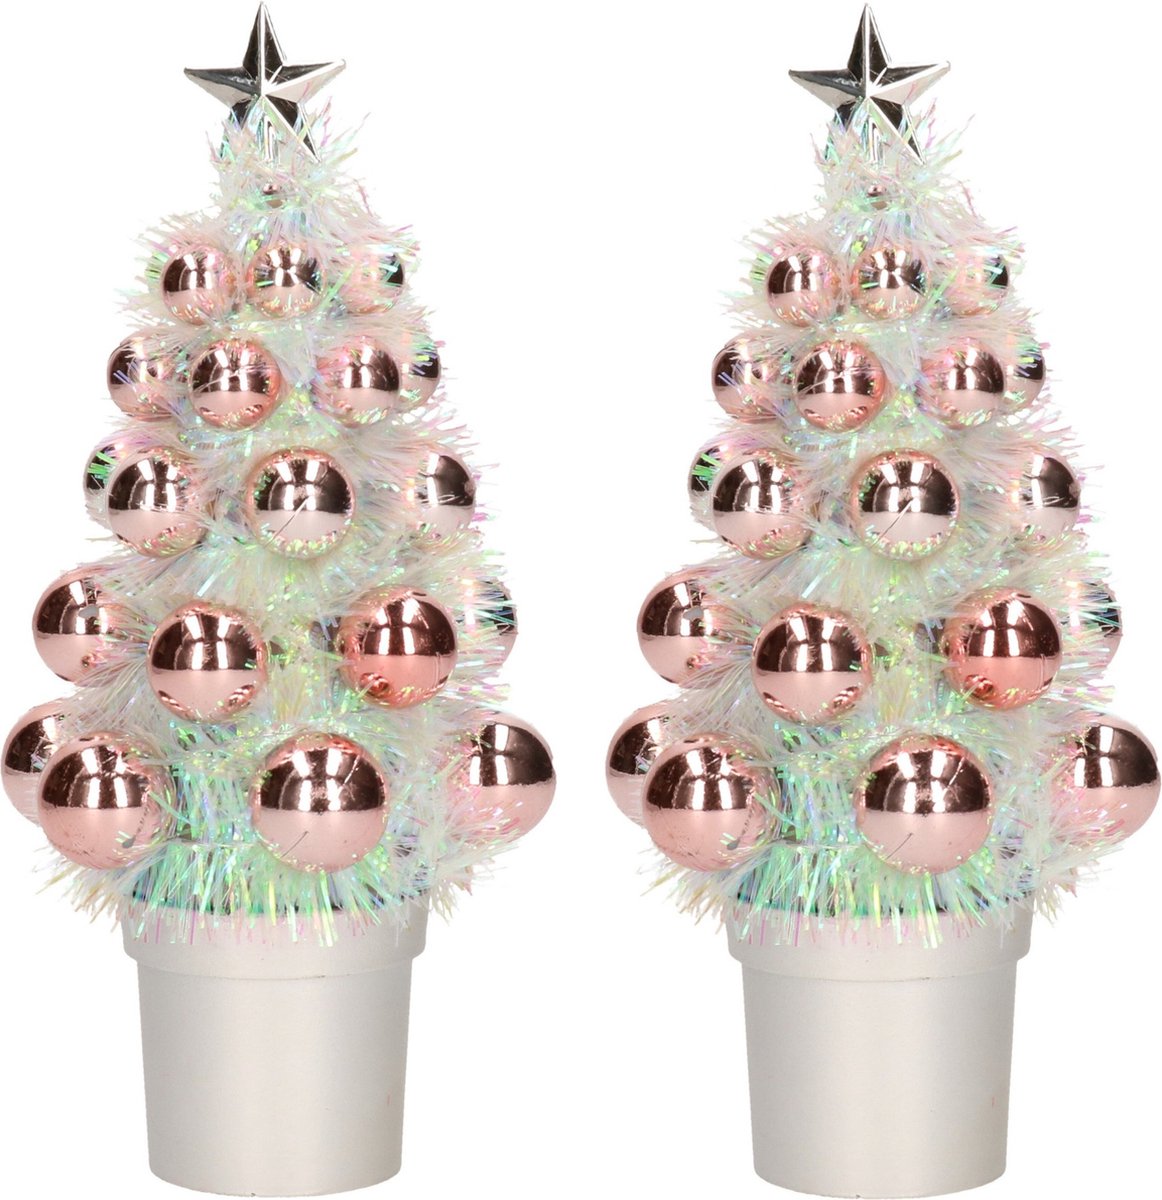 6x Mini kunst kerstboompje zalm roze met kerstballen 19 cm - Kerstversiering - Kunstboompje